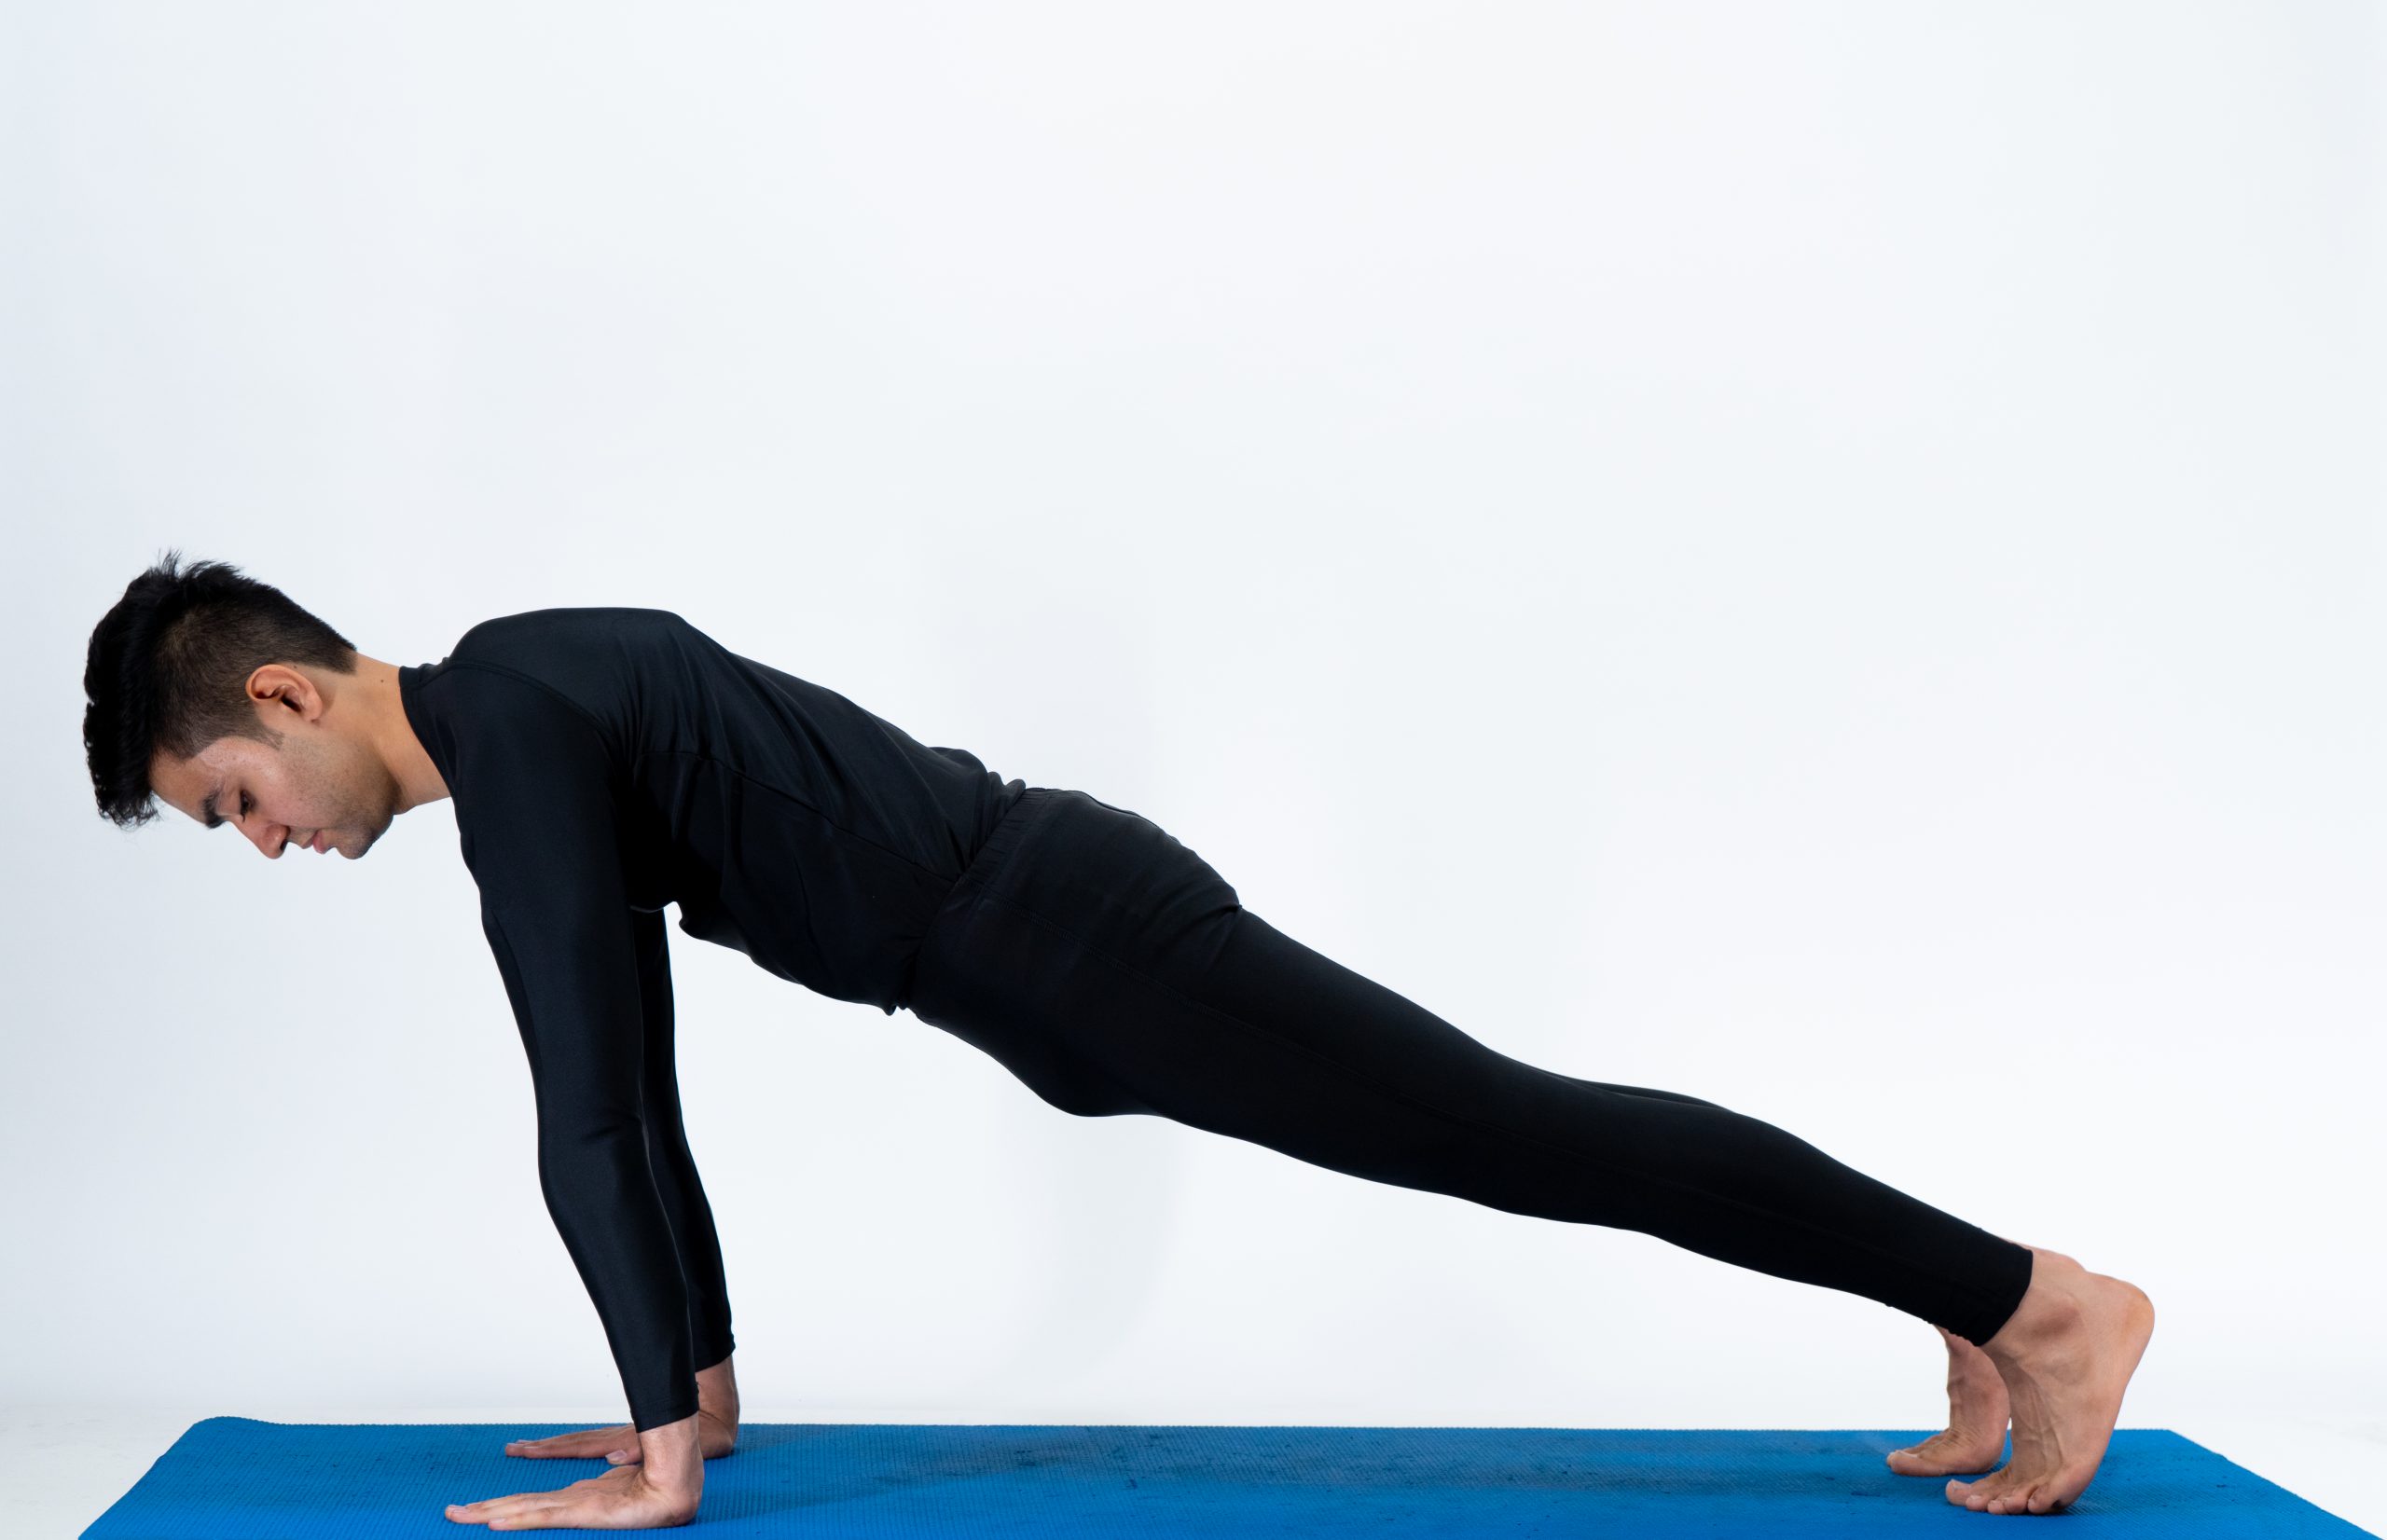 How to Do Perfect Chaturanga aka a Yoga Push-Up